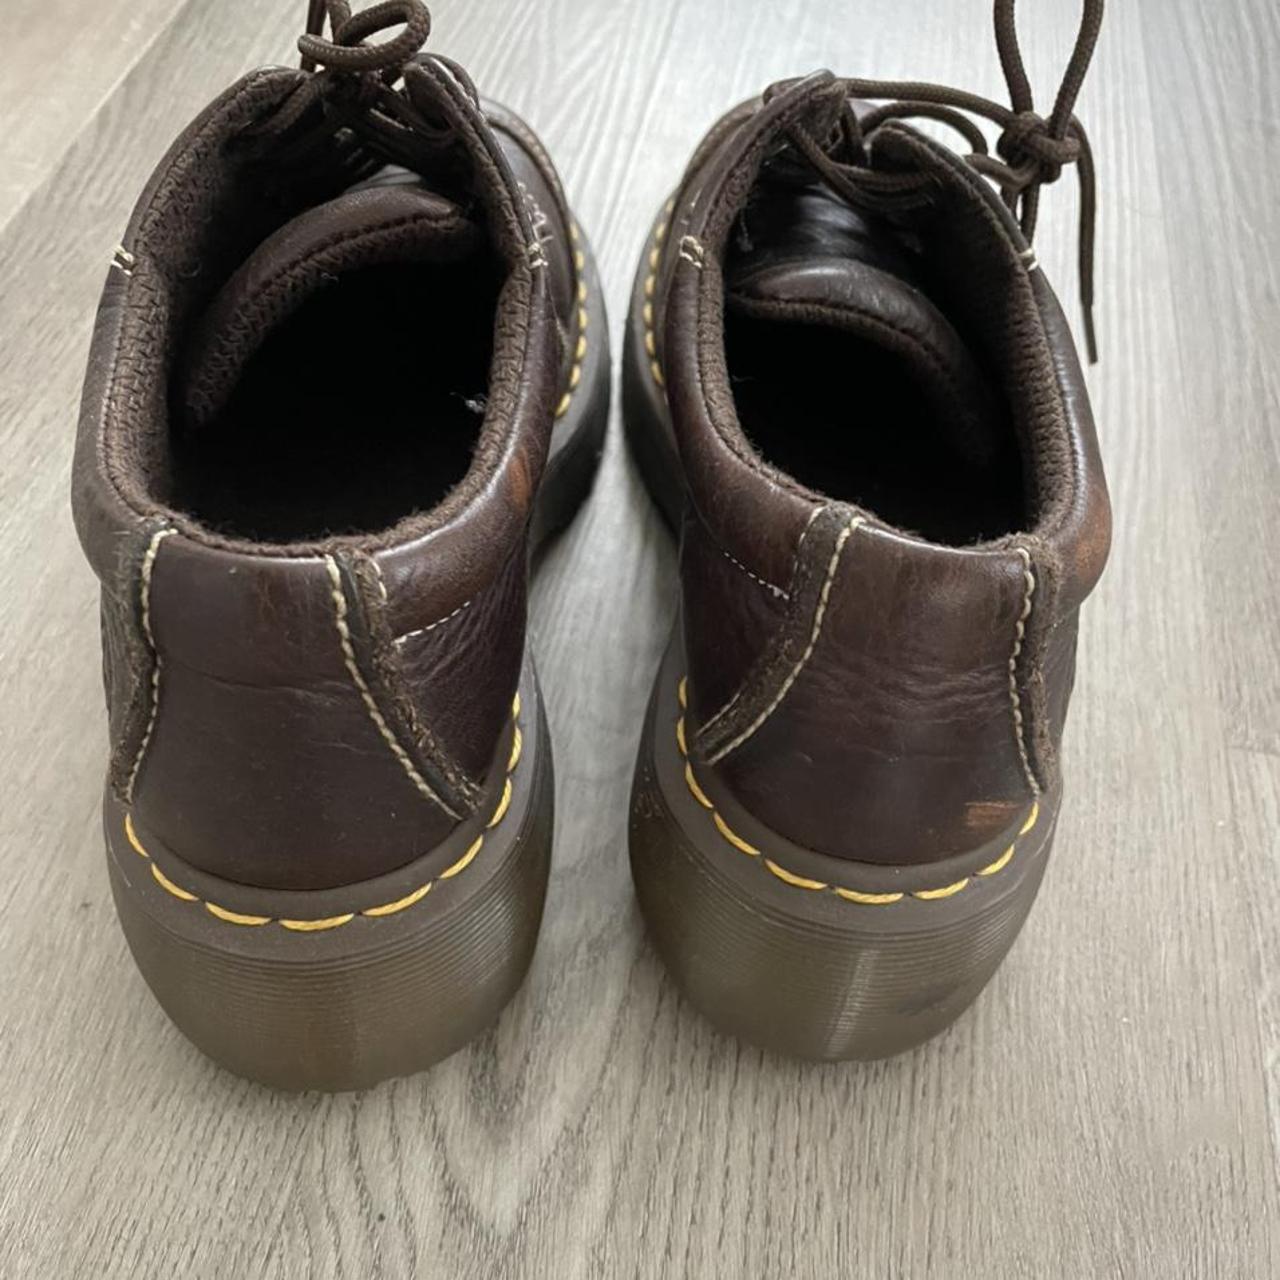 Brown platform doc marten loafers - Depop